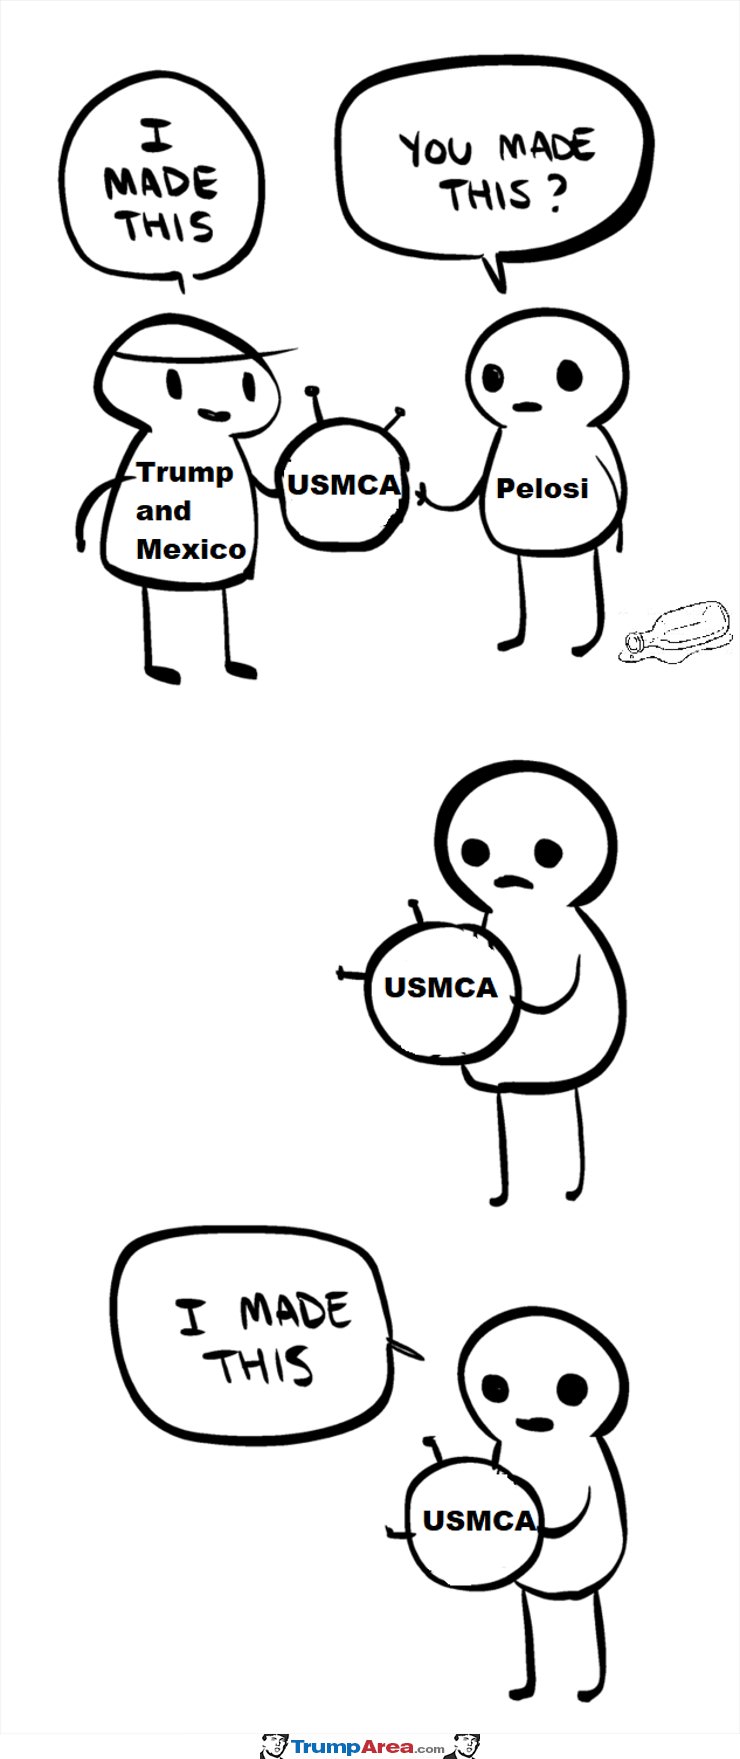 USMCA